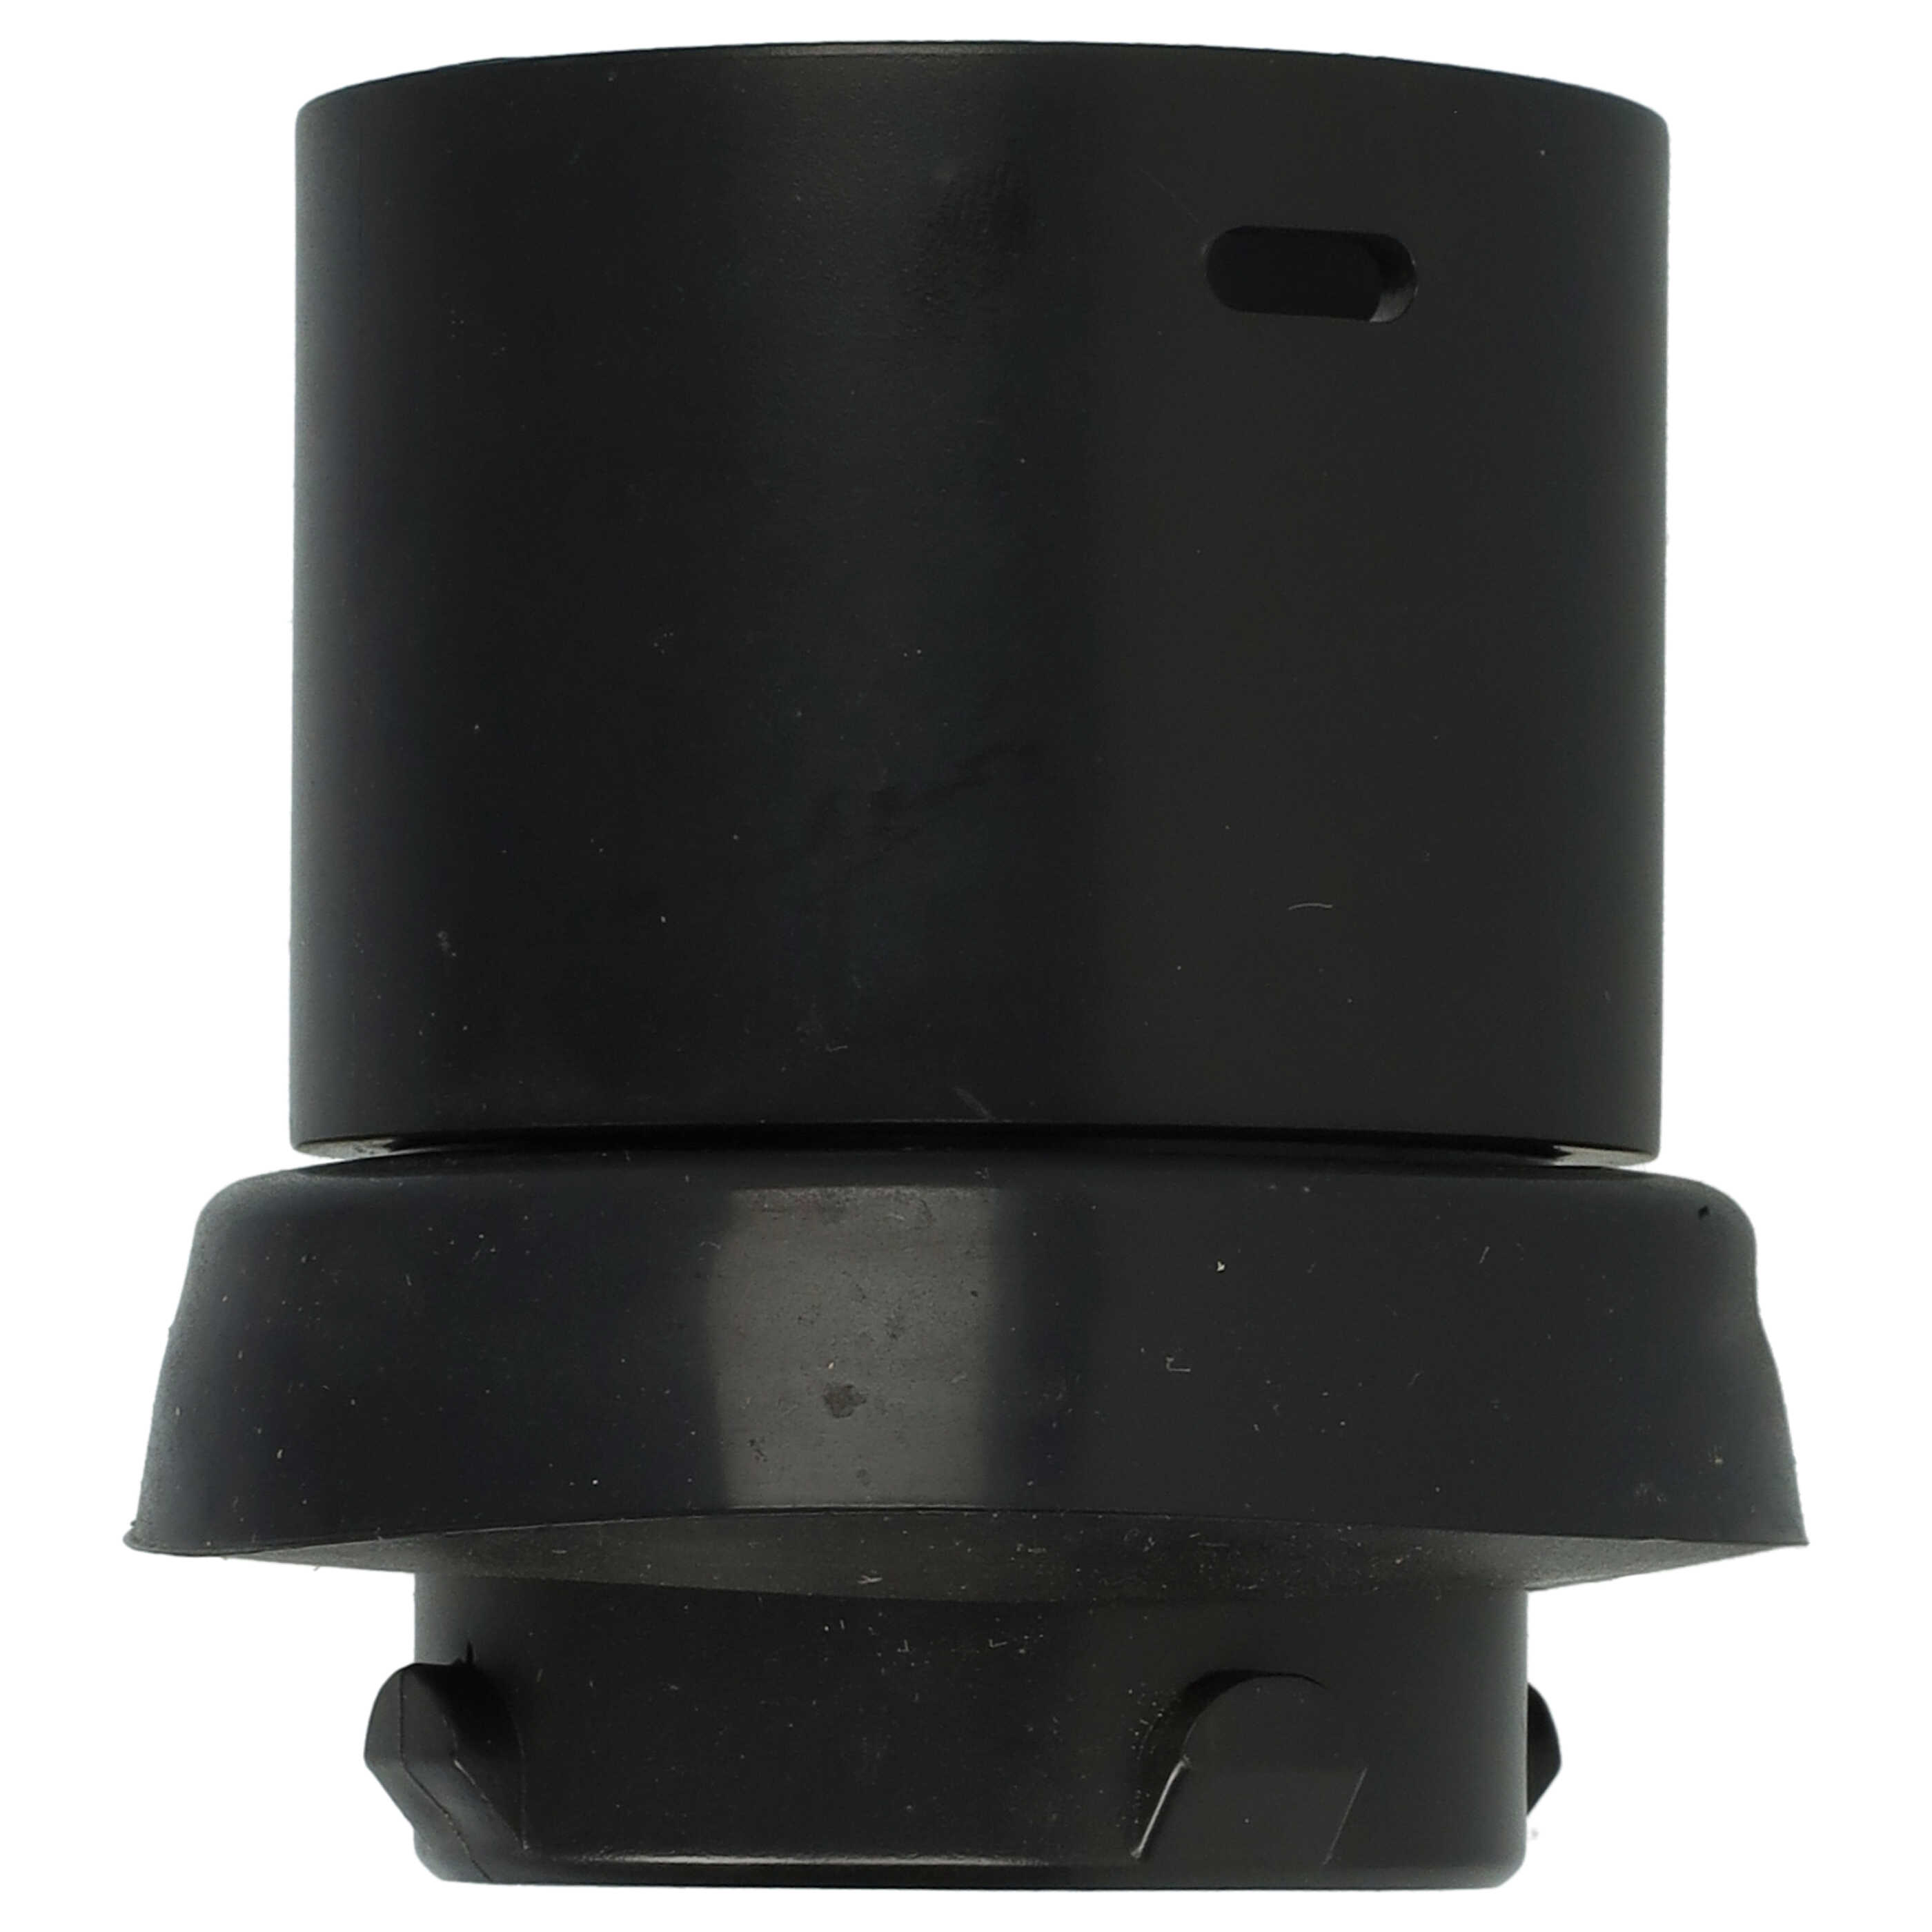 Adaptateur de tuyau pour aspirateur Electrolux / Nilfisk D 711 et autres - 32 mm rond, à clic